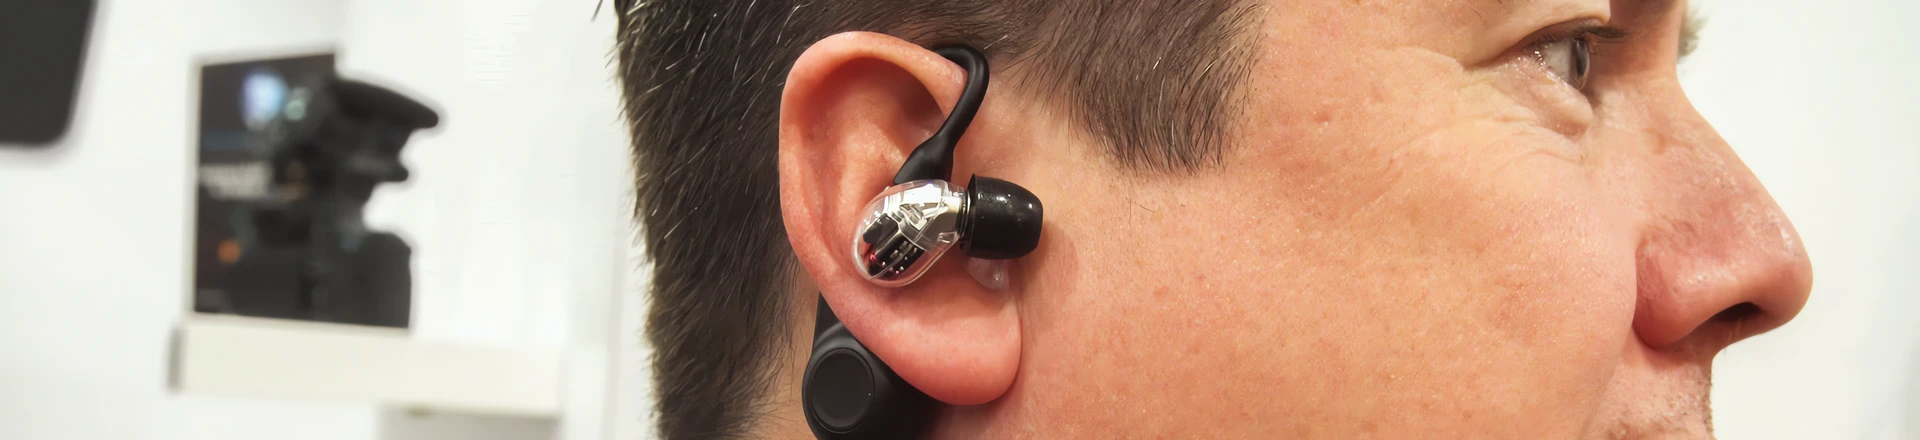 NAMM'20: Shure Aonic - na podbój rynku słuchawek bezprzewodowych